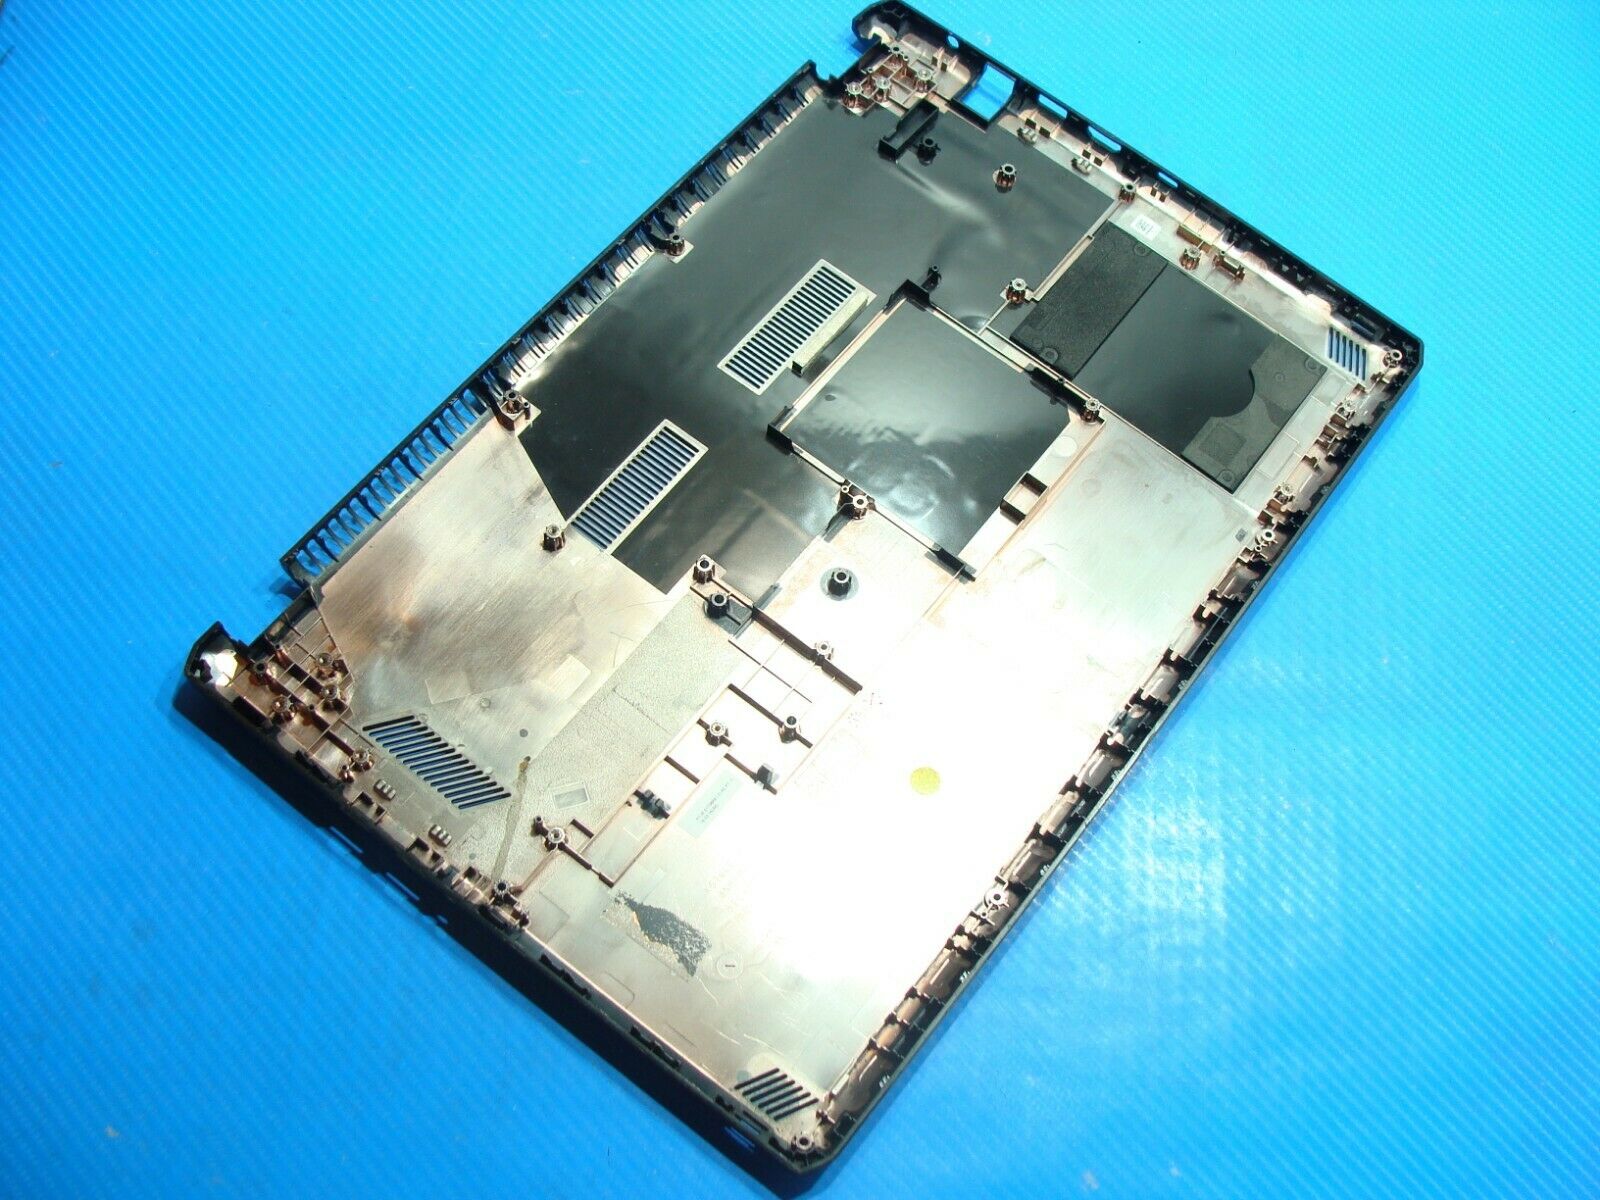 Asus VivoBook K570UD-ES76 15.6